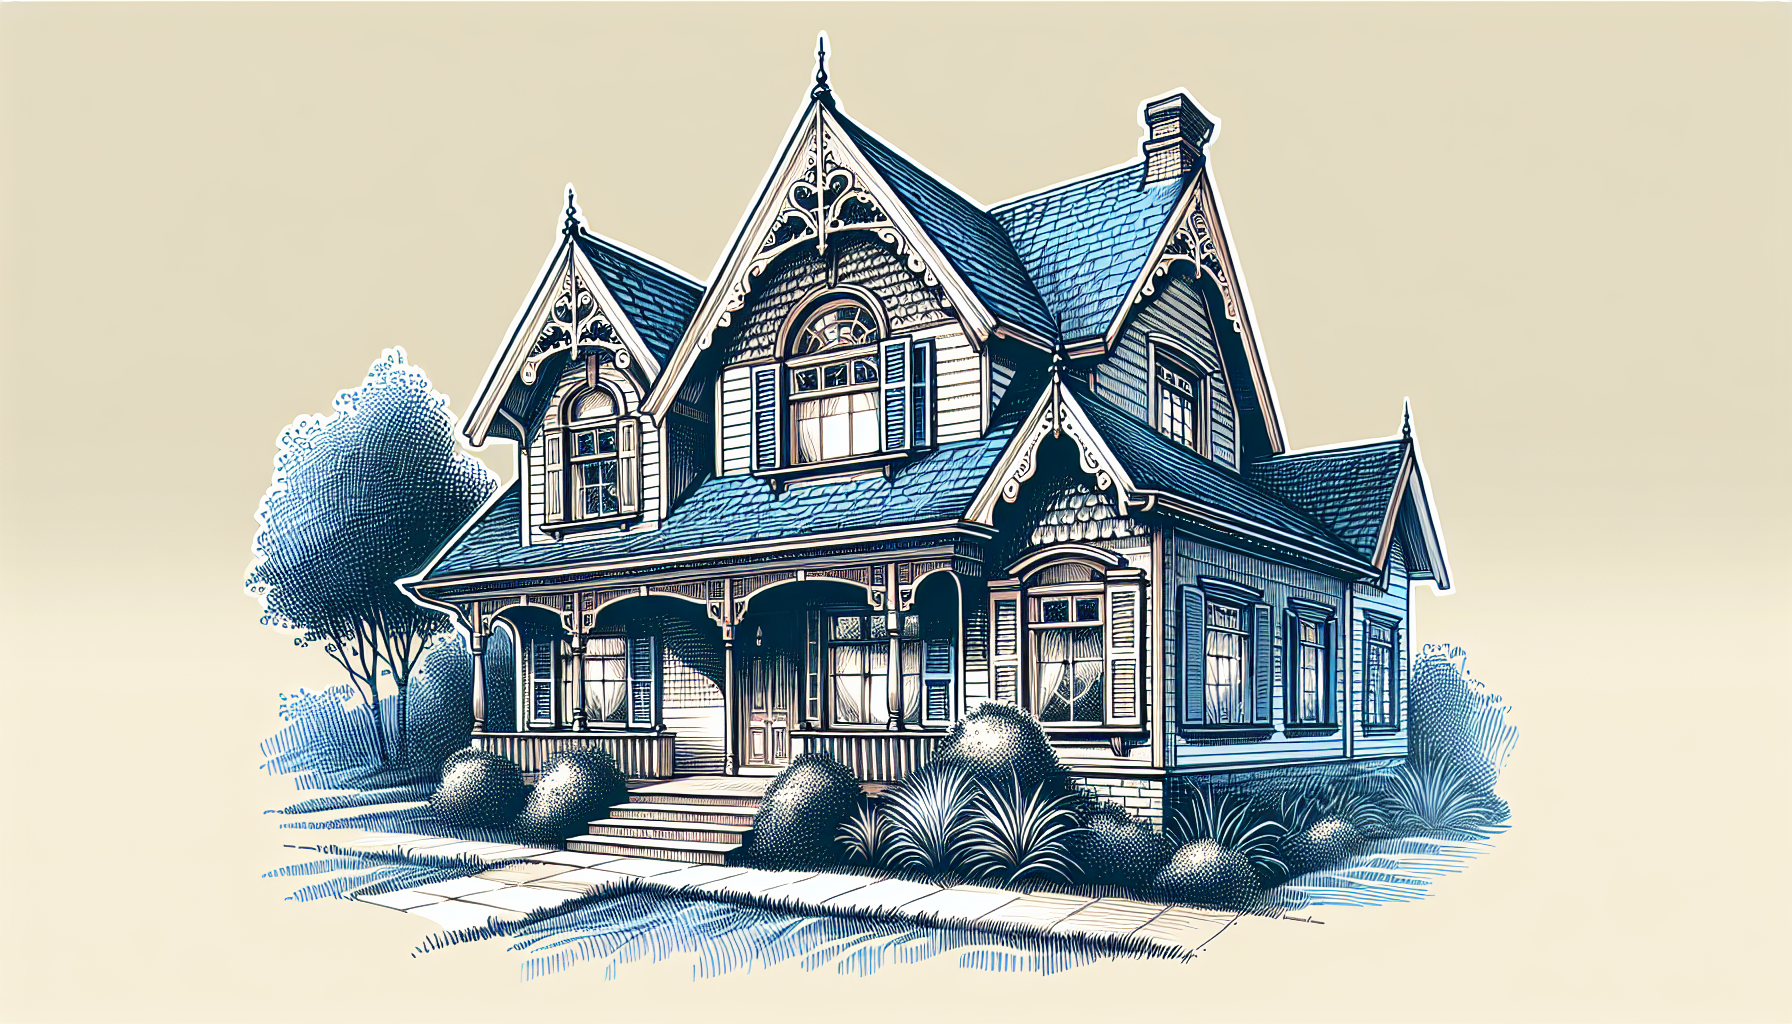 Illustration einer Dachgaube als Veränderung am Erscheinungsbild des Hauses